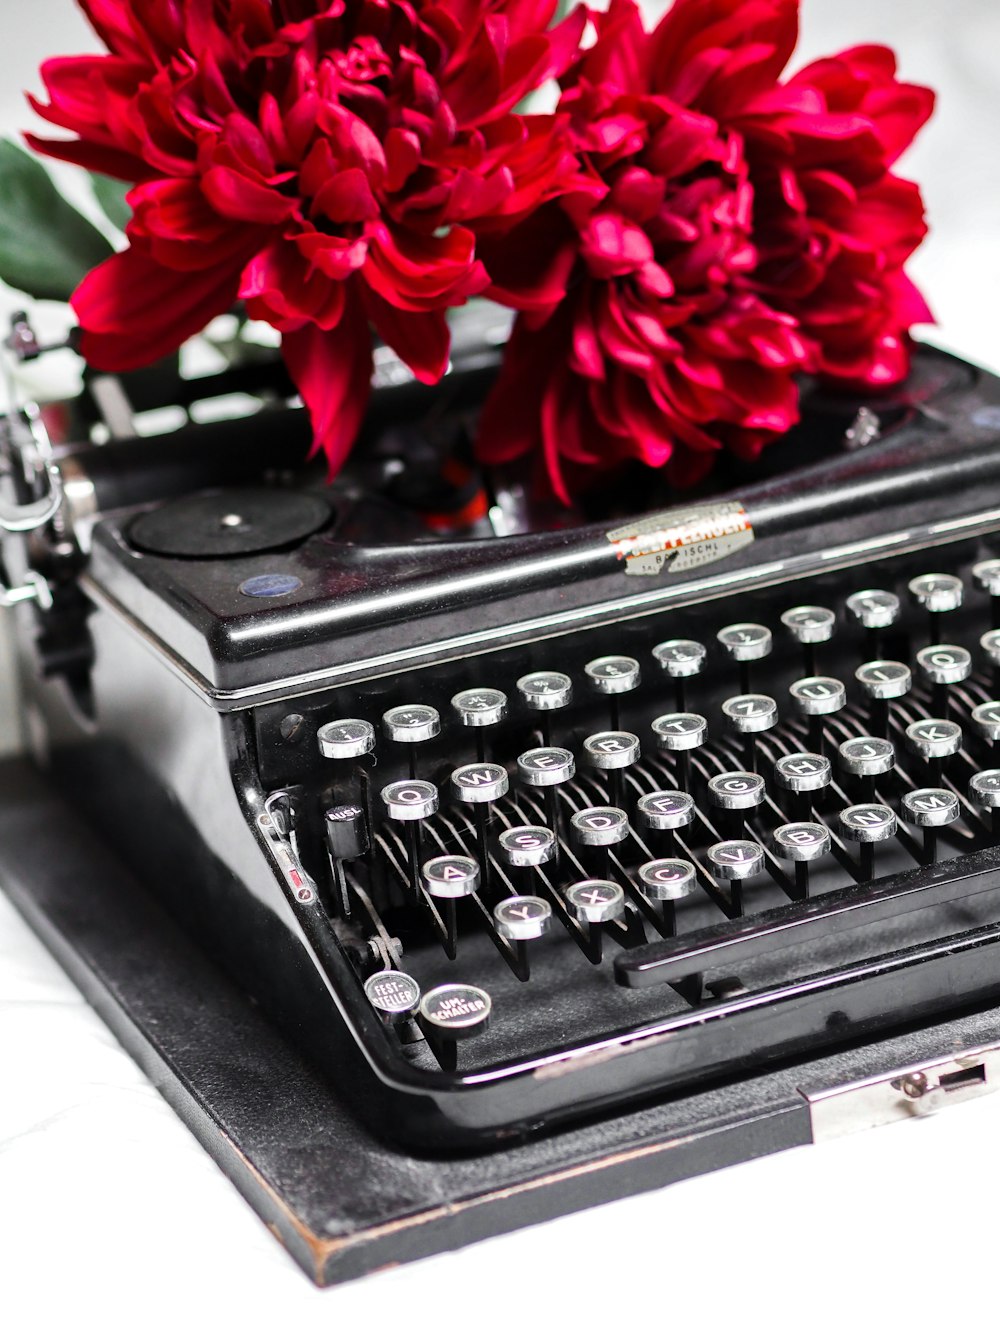 rosa vermelha na máquina de escrever preta